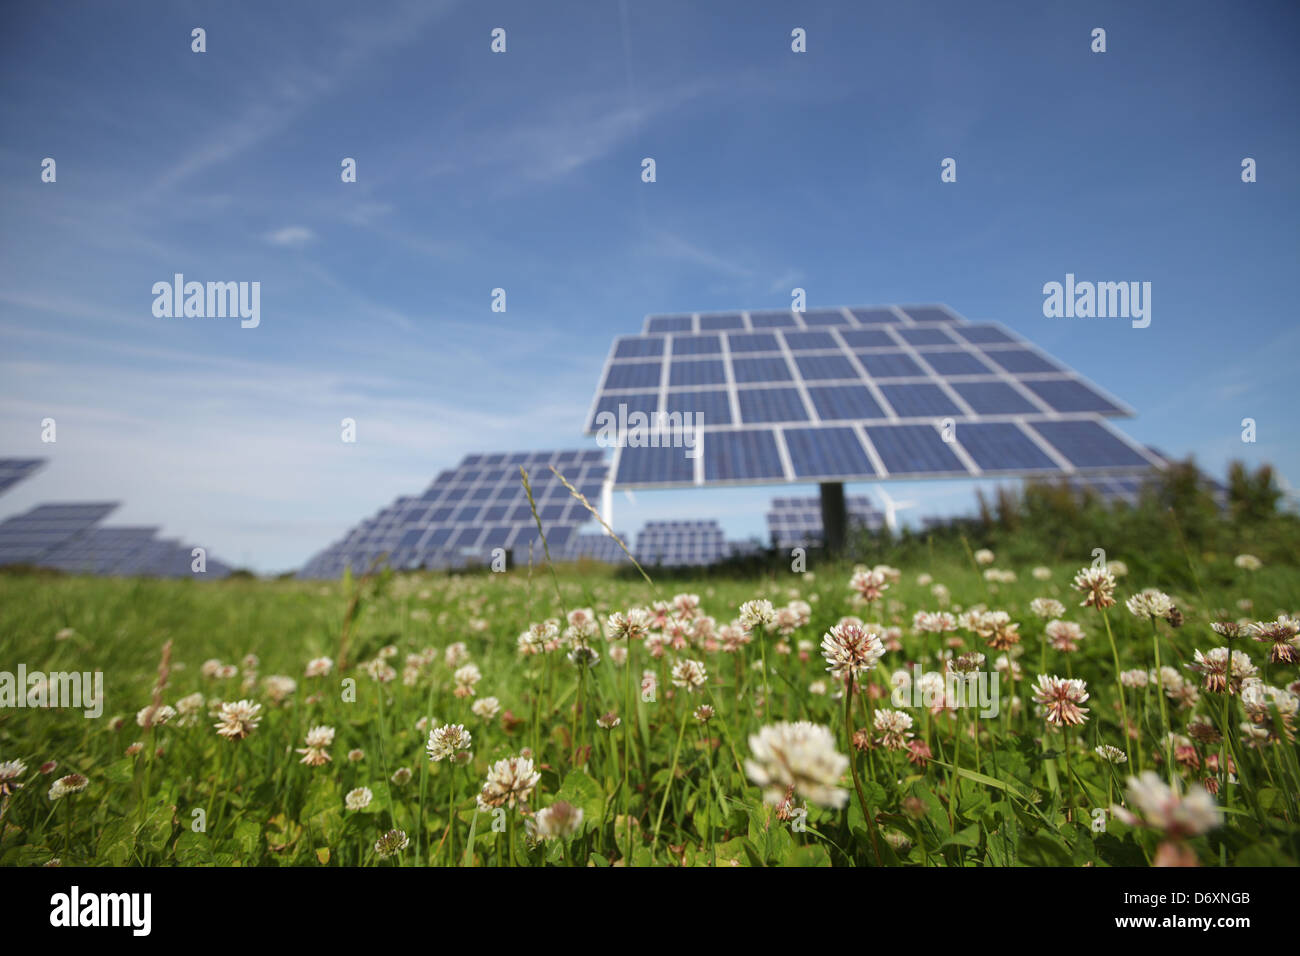 Nordhackstedt, Allemagne, ferme solaire composé de systèmes de suivi Banque D'Images